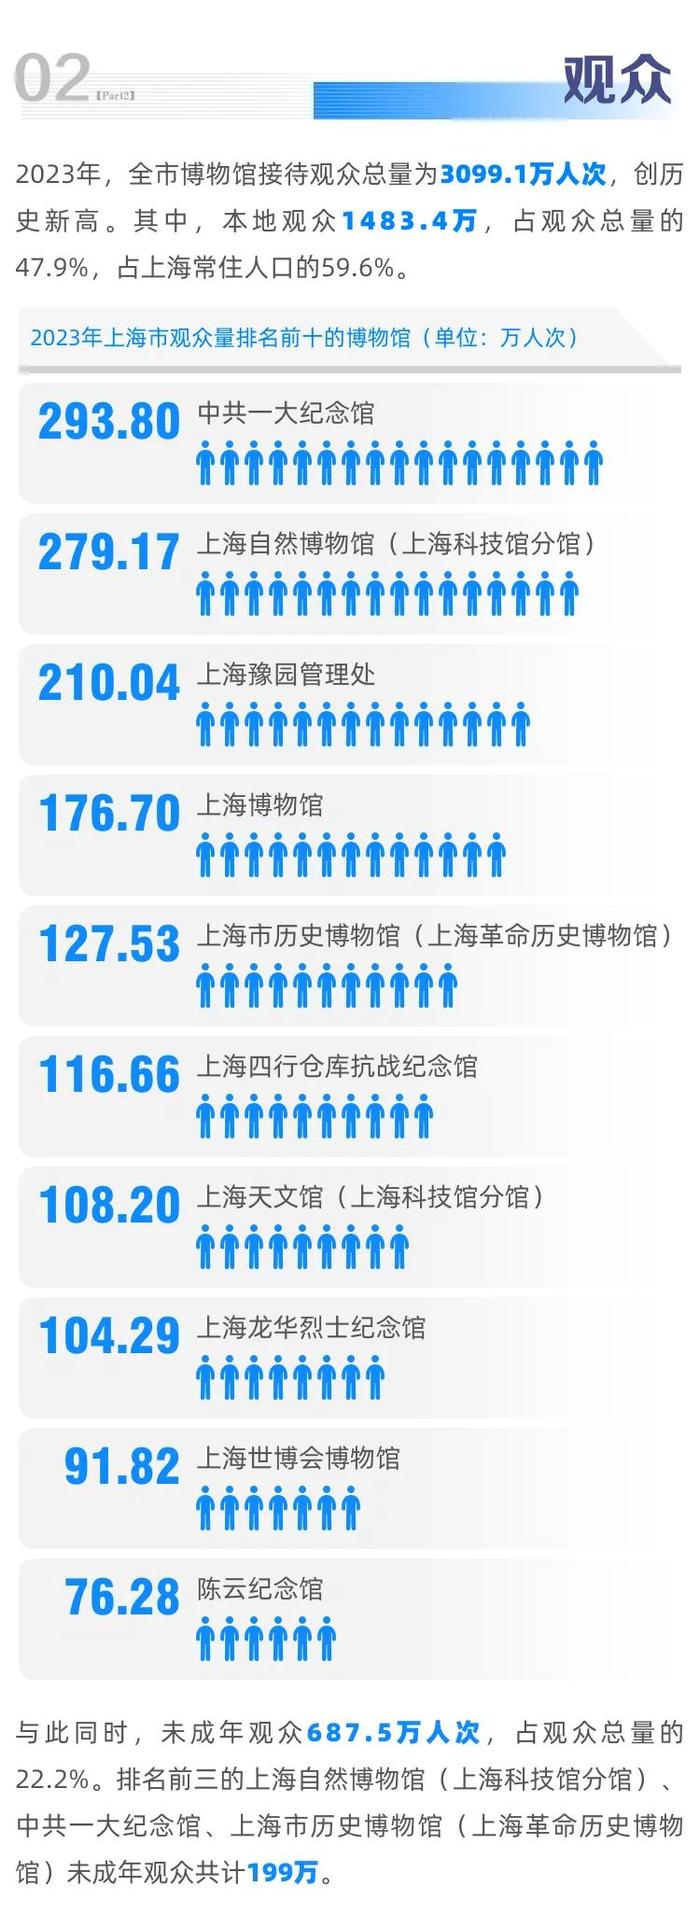 【最新】2023年上海市博物馆年度报告发布